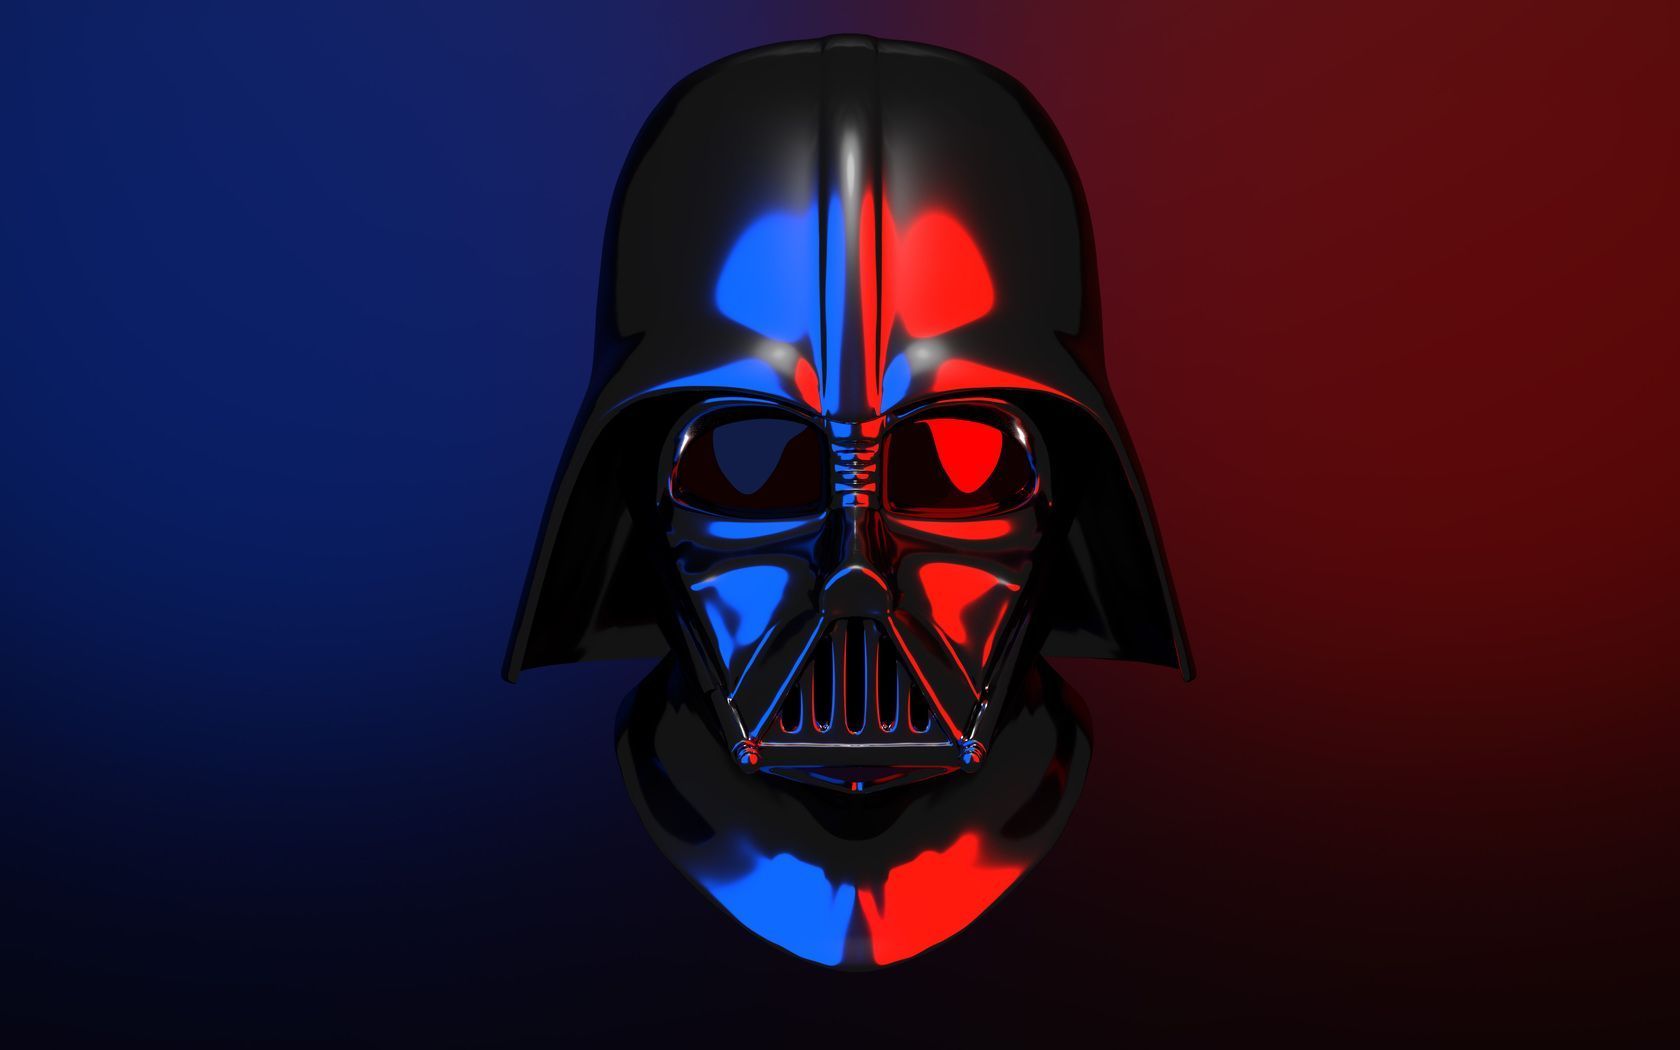 Darth Vader Helmet Wallpaper Free Darth Vader Helmet Background